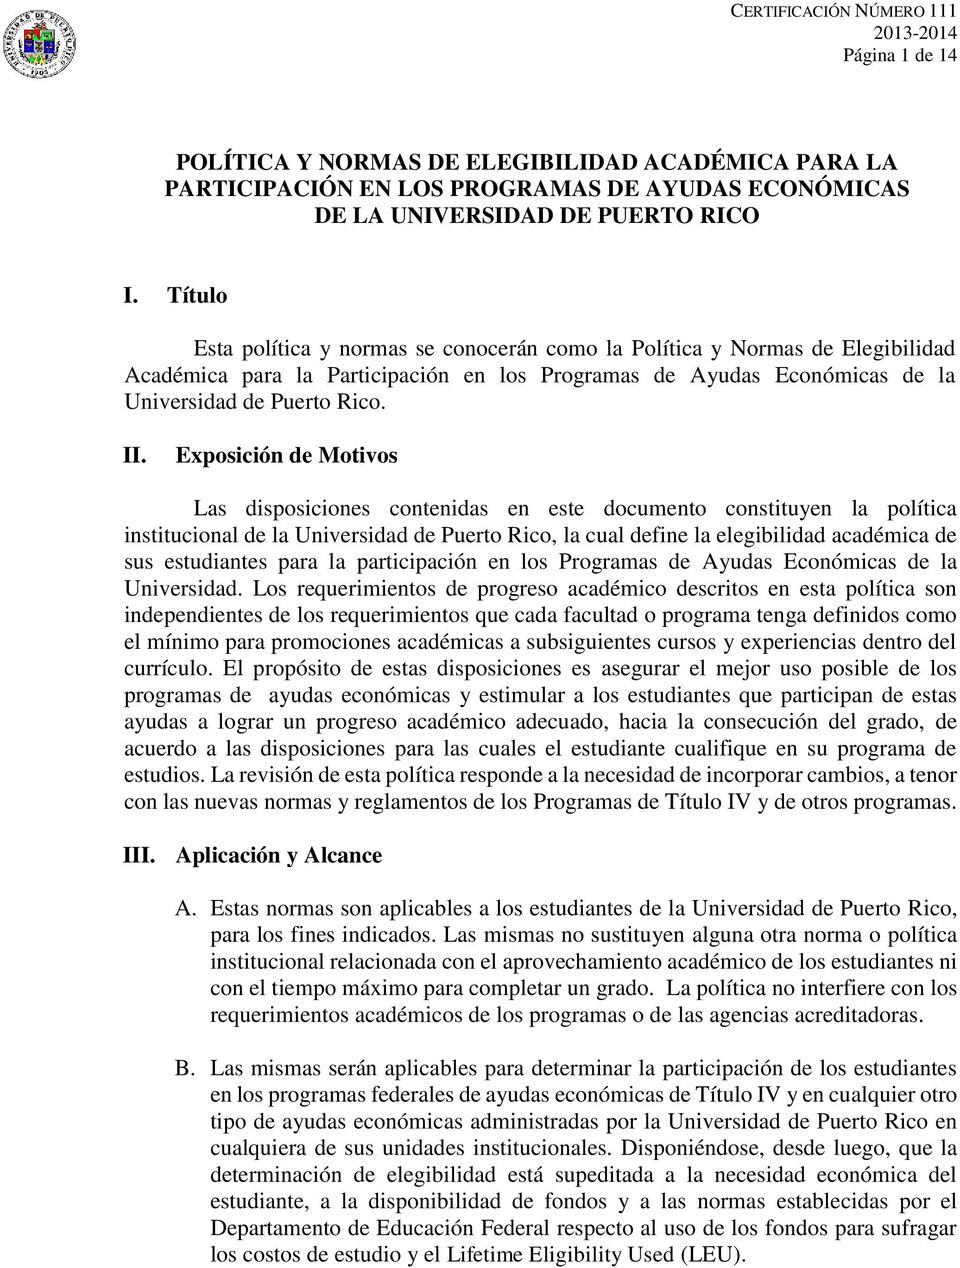 Exposición de Motivos Las disposiciones contenidas en este documento constituyen la política institucional de la Universidad de Puerto Rico, la cual define la elegibilidad académica de sus